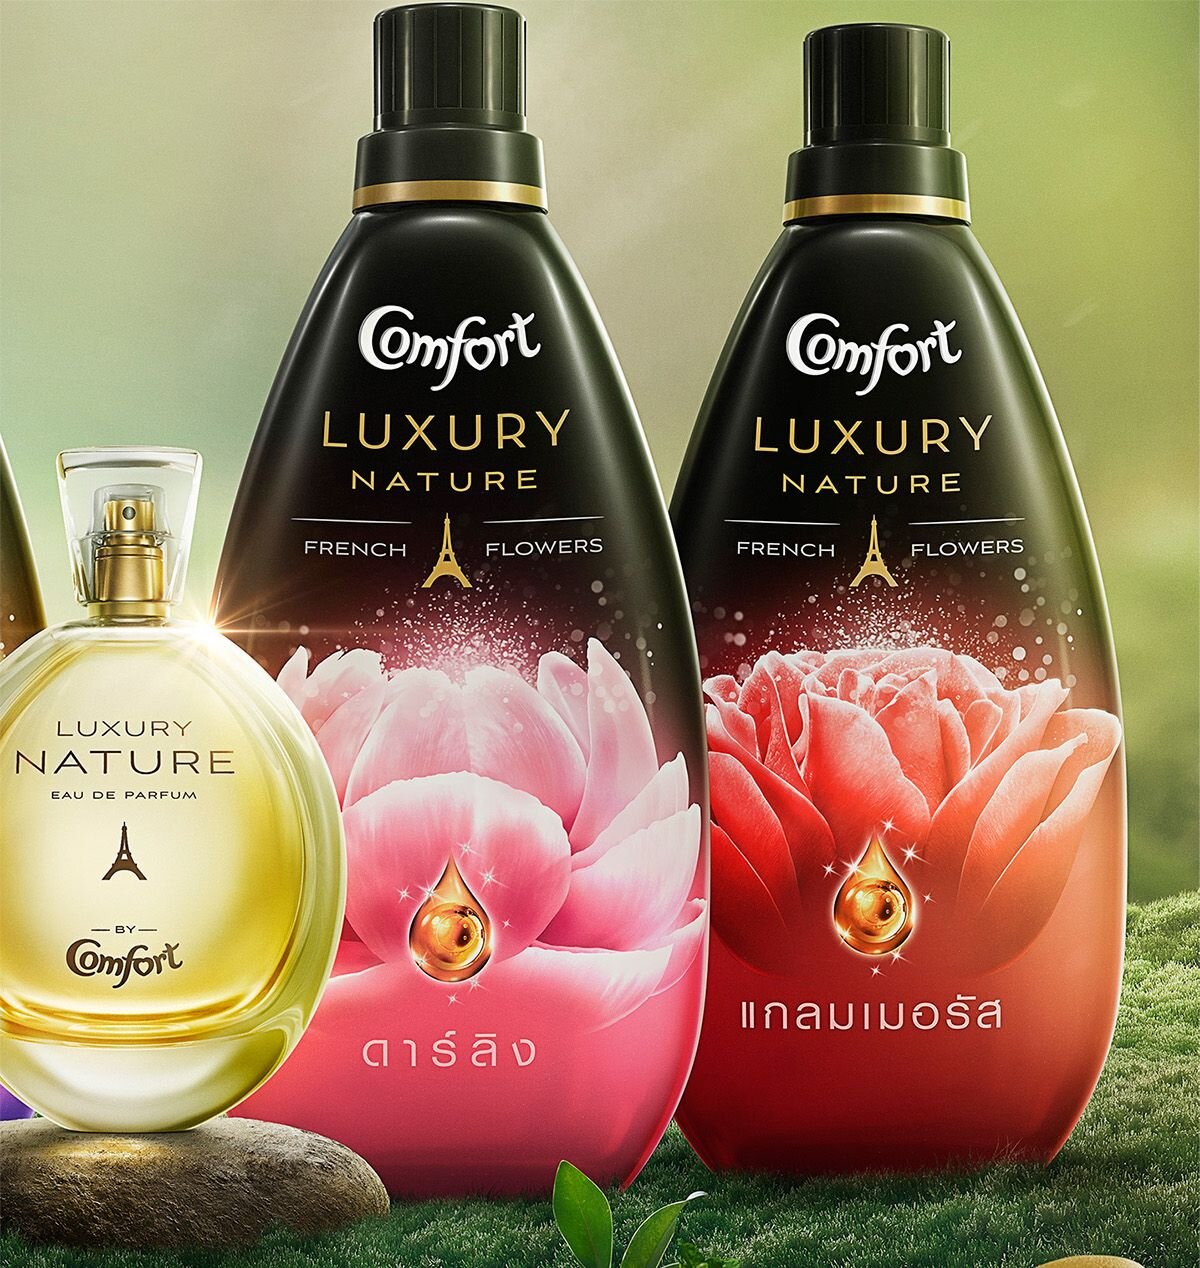 Hương nồng nàn của nước xả vải luxury Thái Lan là lựa chọn cho những người thích mùi hương nhẹ nhàng, tự nhiên